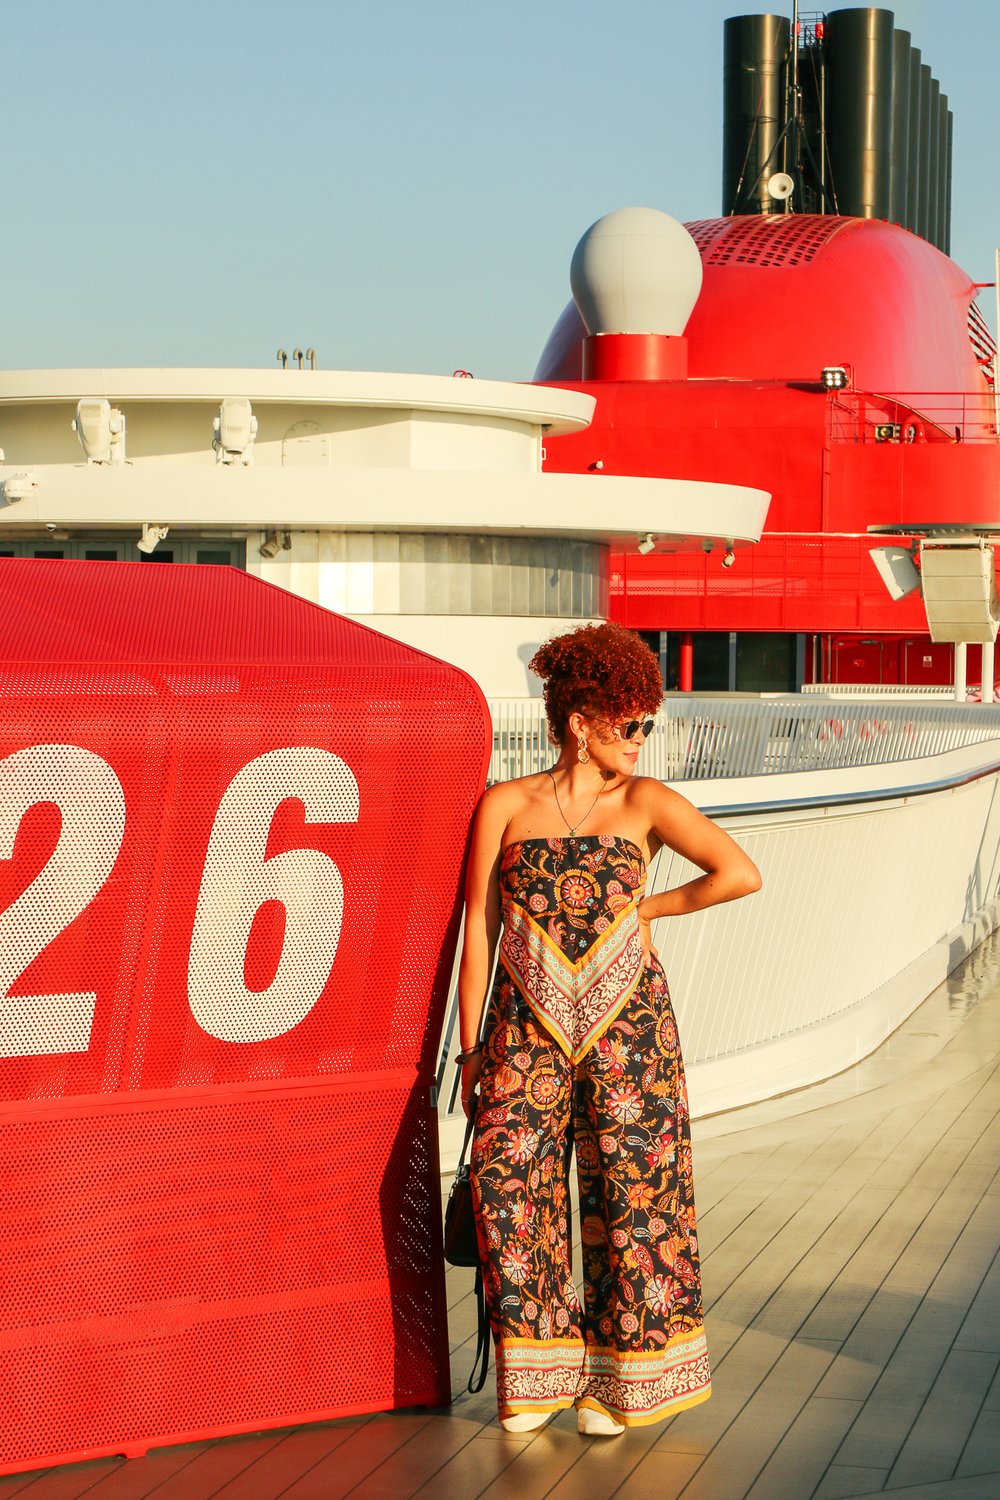 Jessica Morrobel visiting Cannes, France